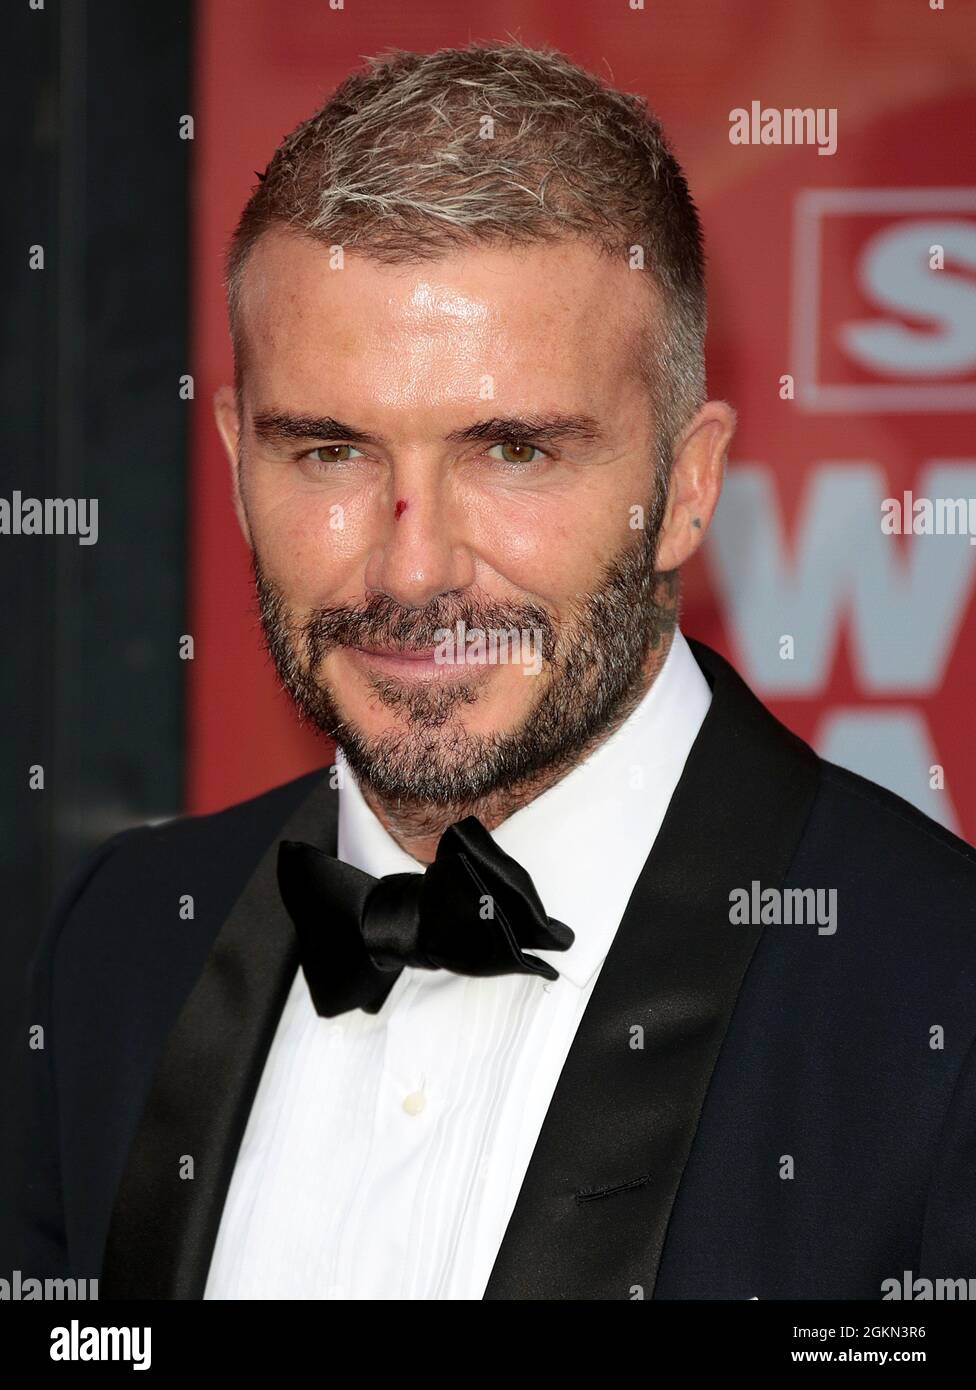 Sep 14, 2021 - London, England, UK - David Beckham attends The Sun's ...